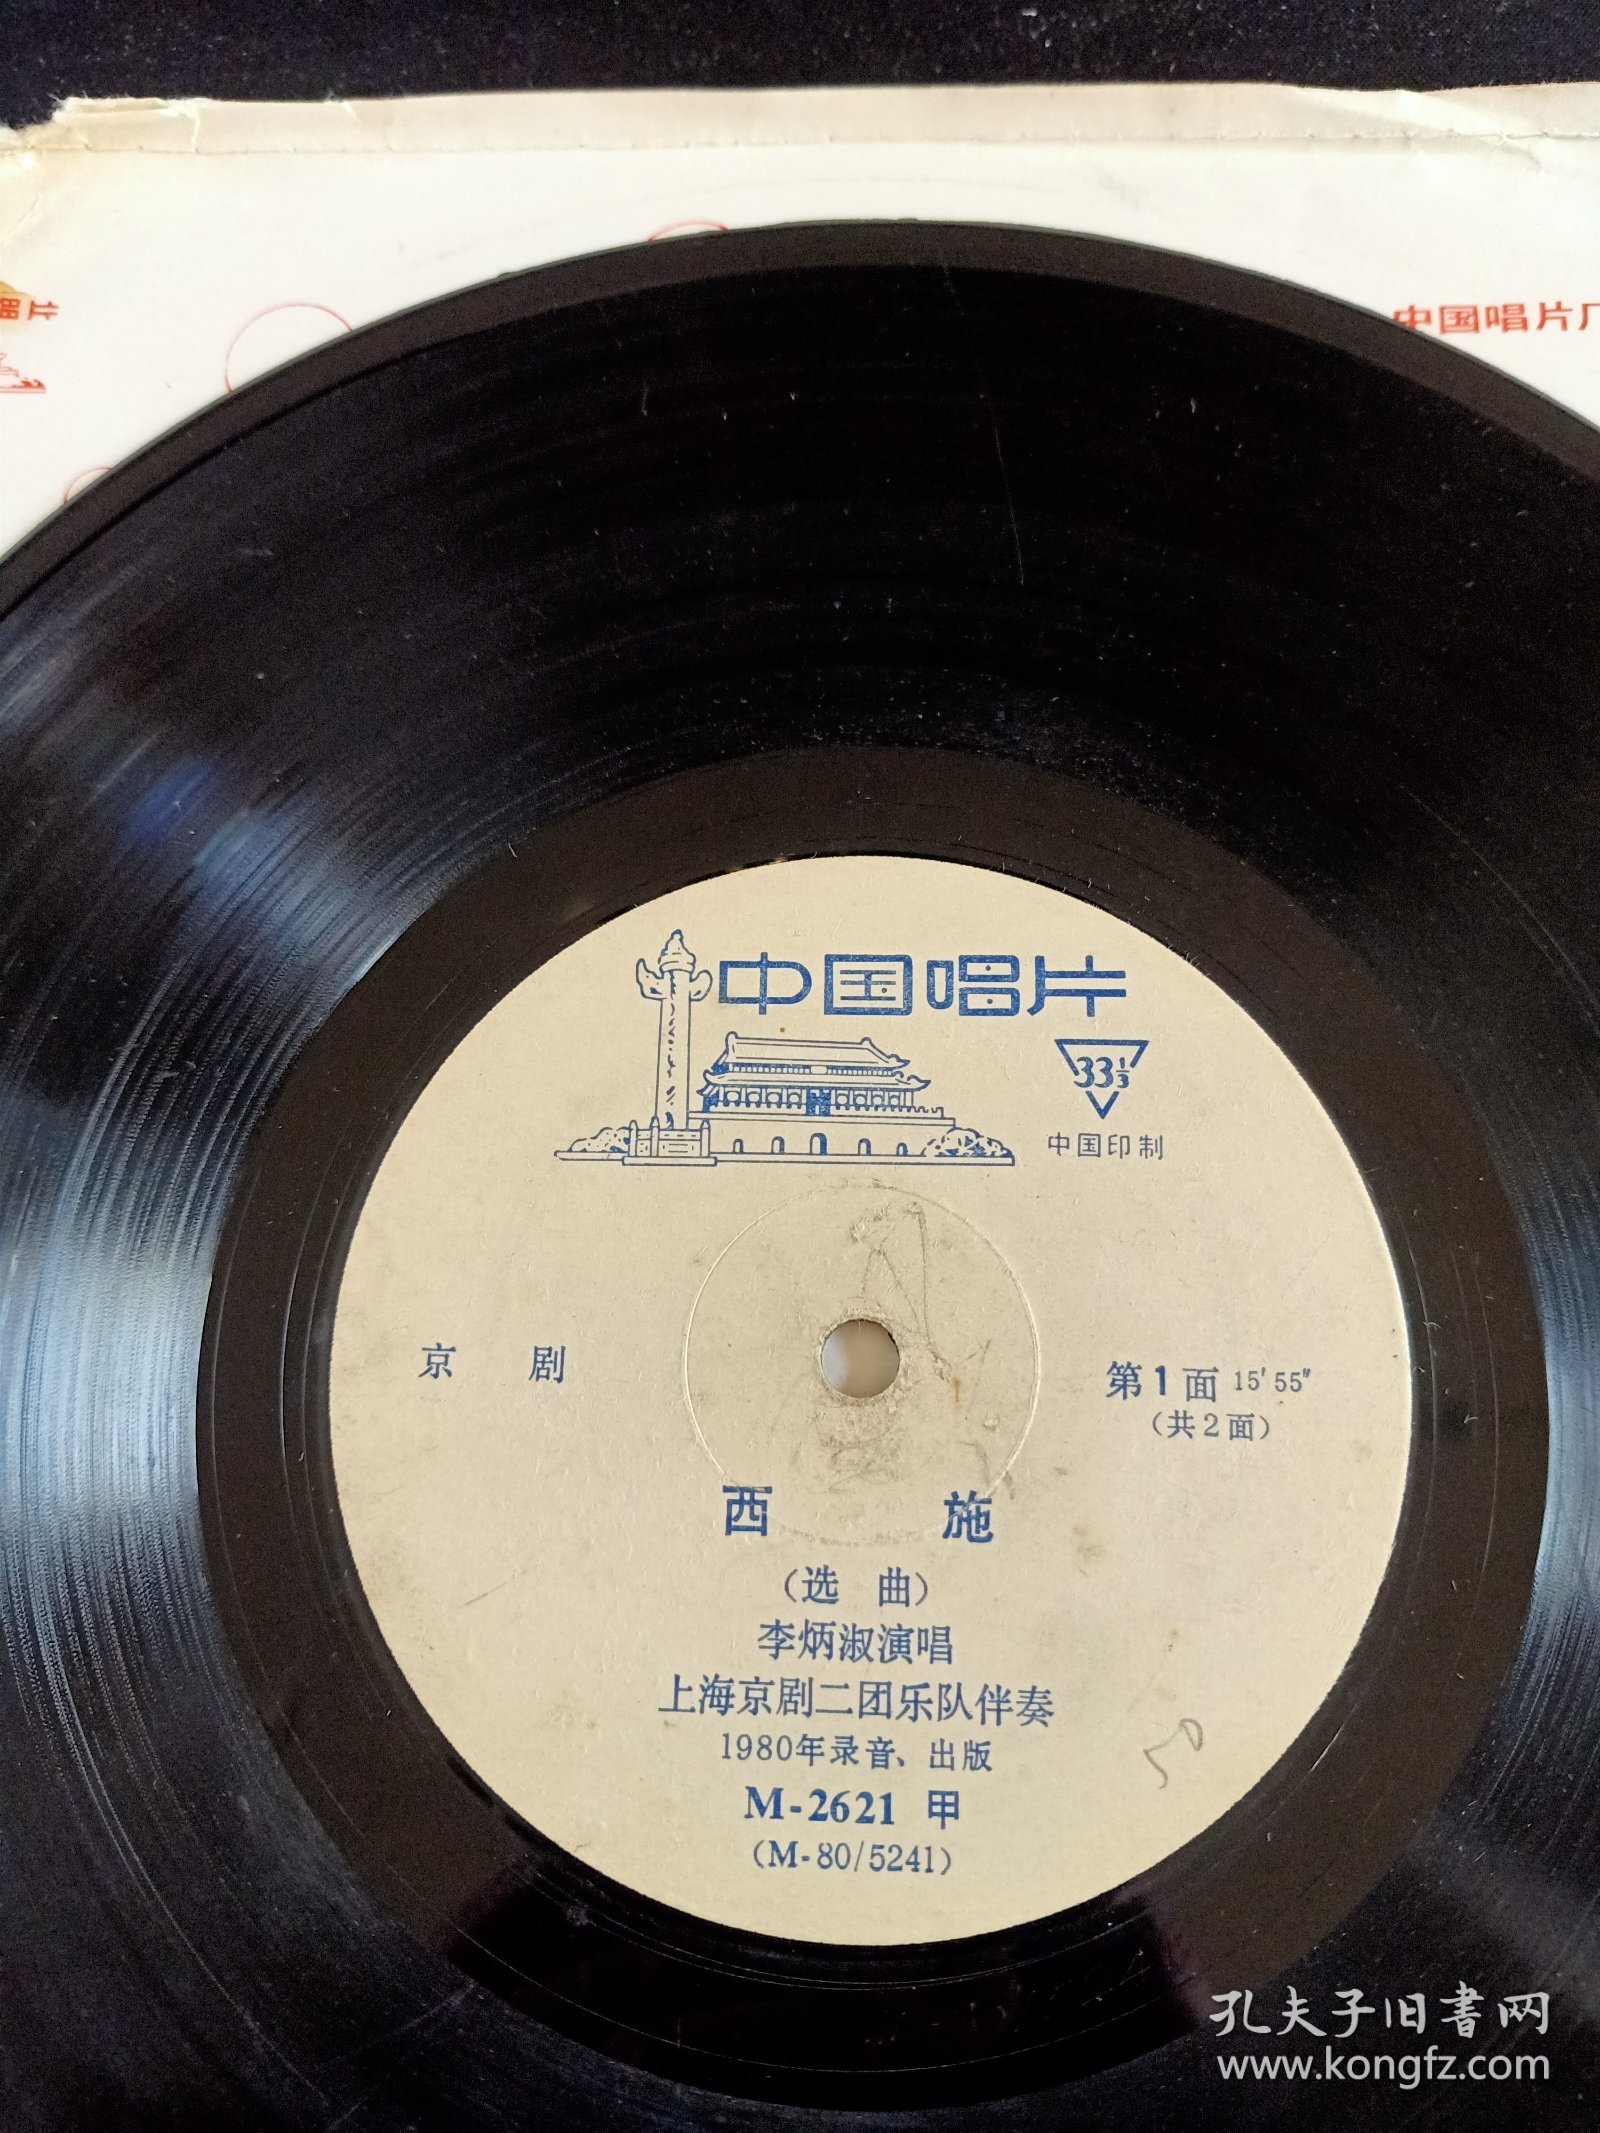 《京剧 西施(选曲)》全套2面黑胶唱片(8.5品)，李炳淑演唱，M-2621